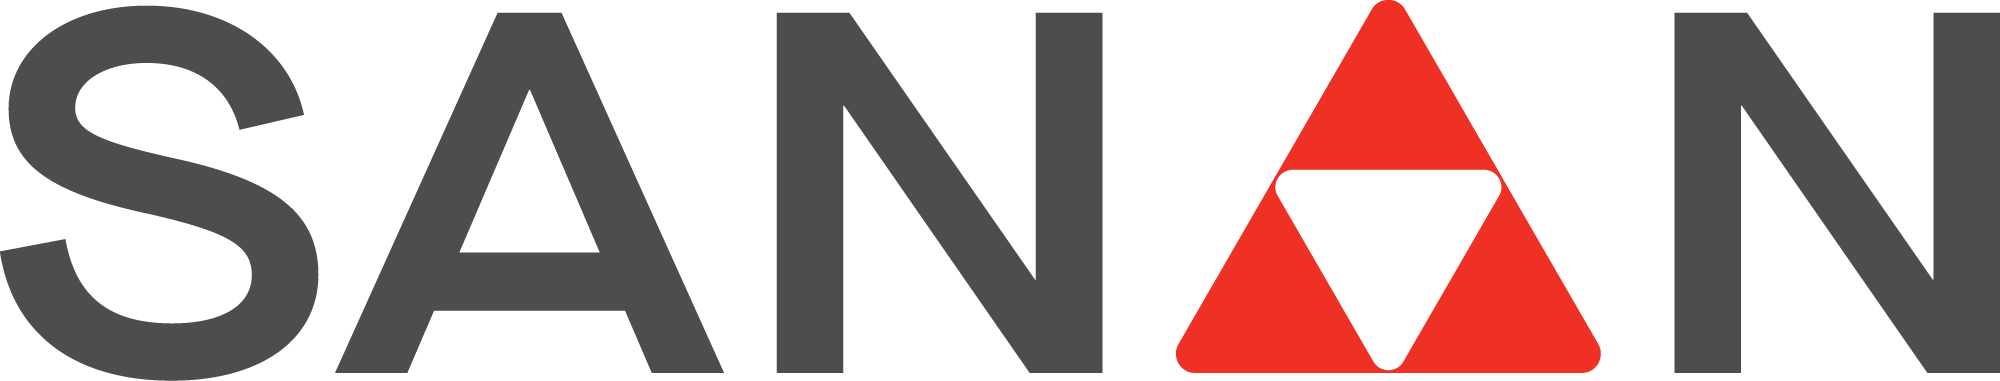 Logo Công ty Cổ phần Sanan